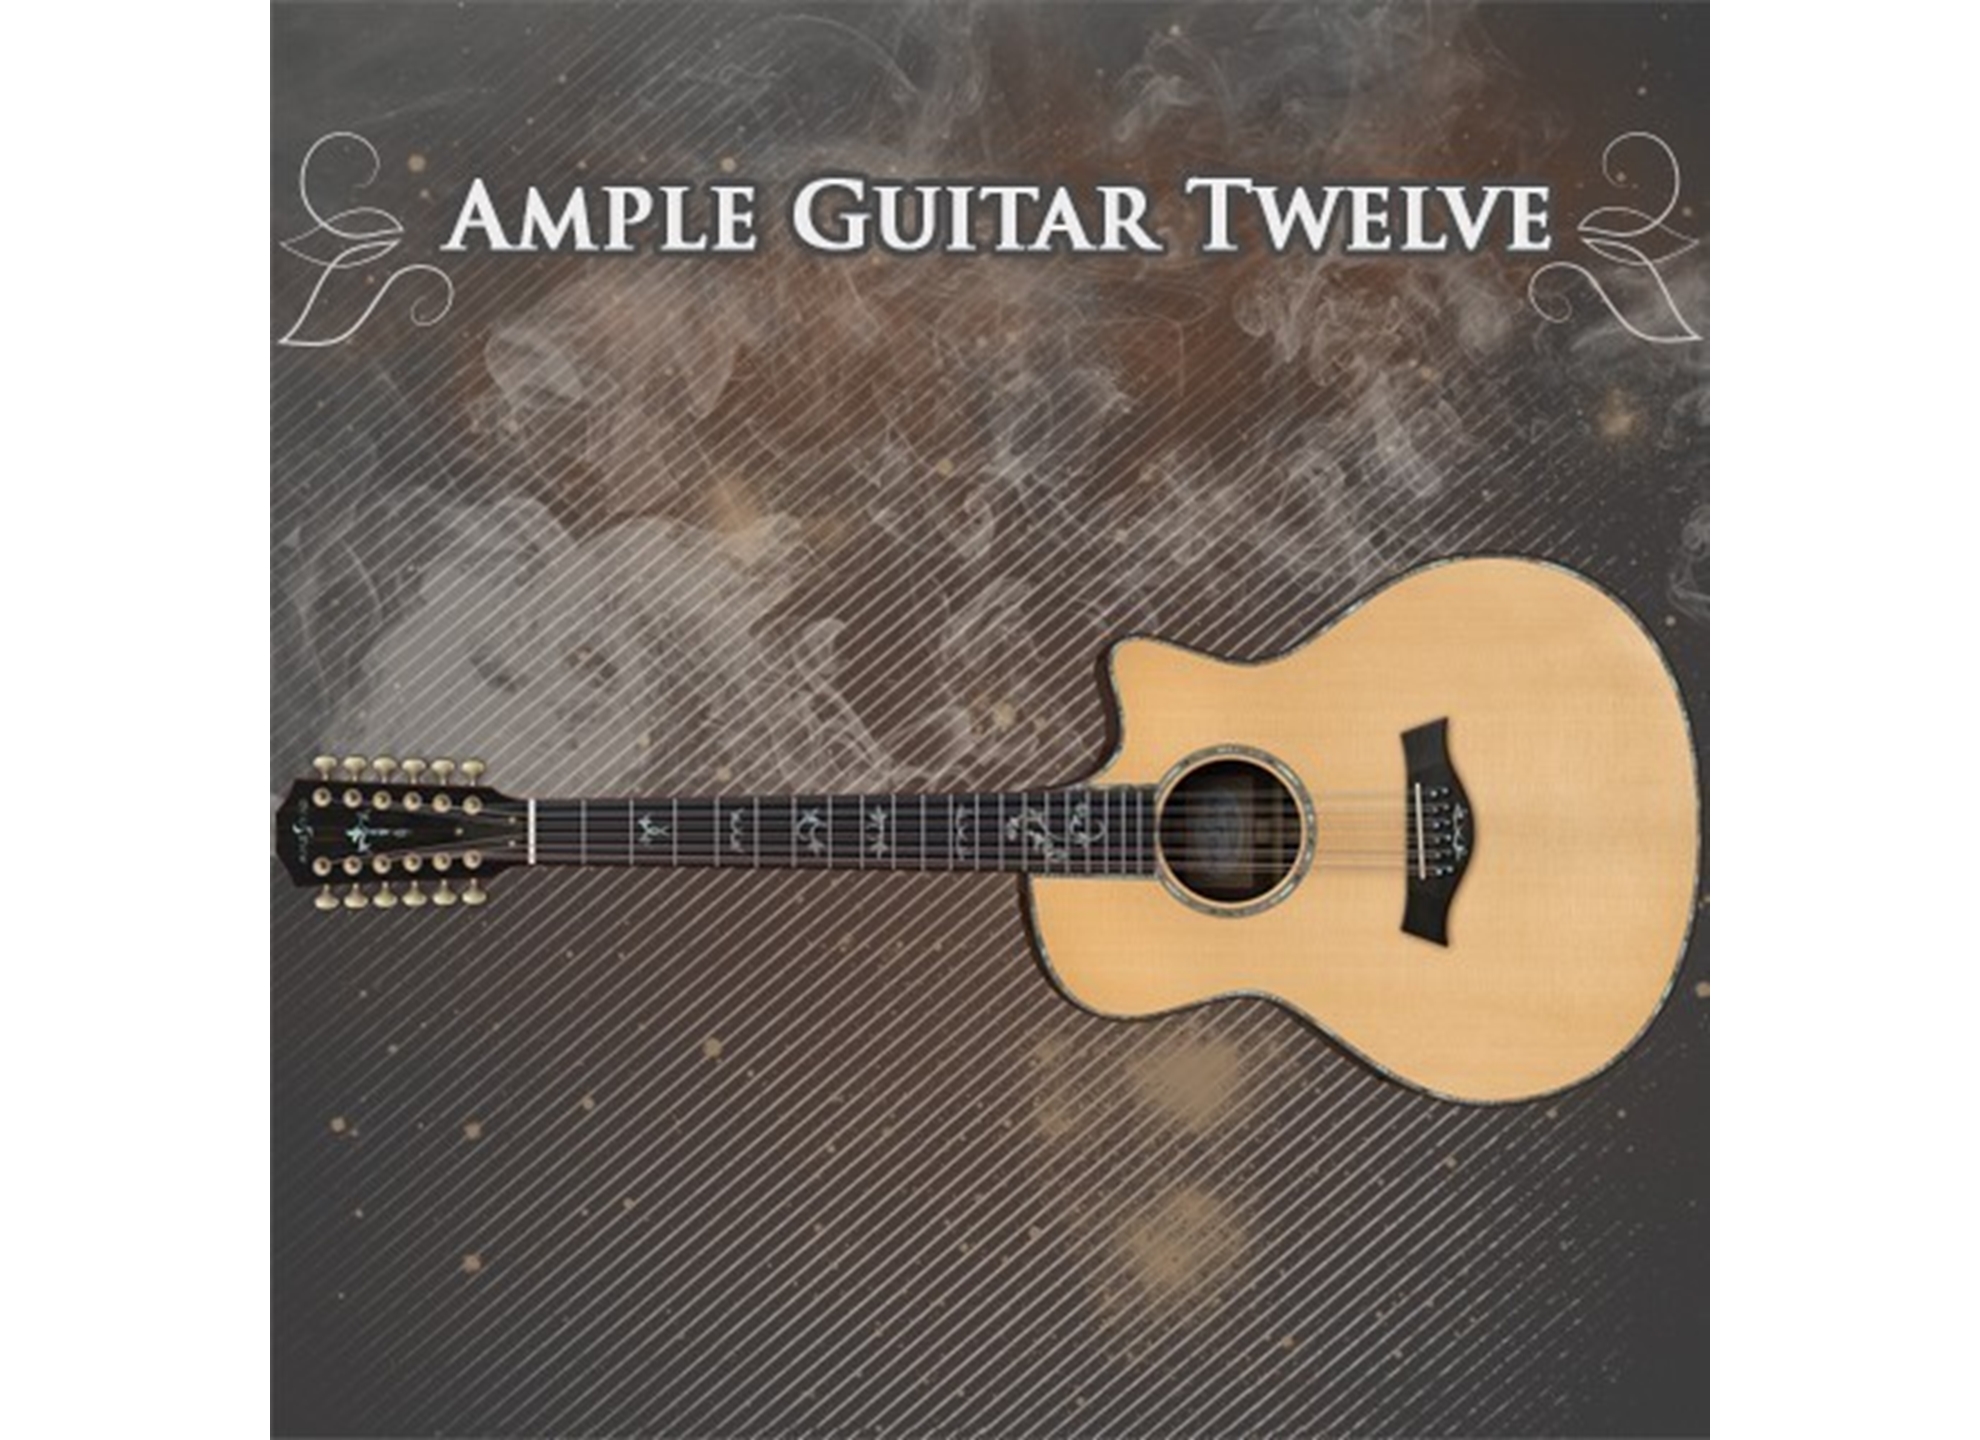 Ampler Guitar Twelve III